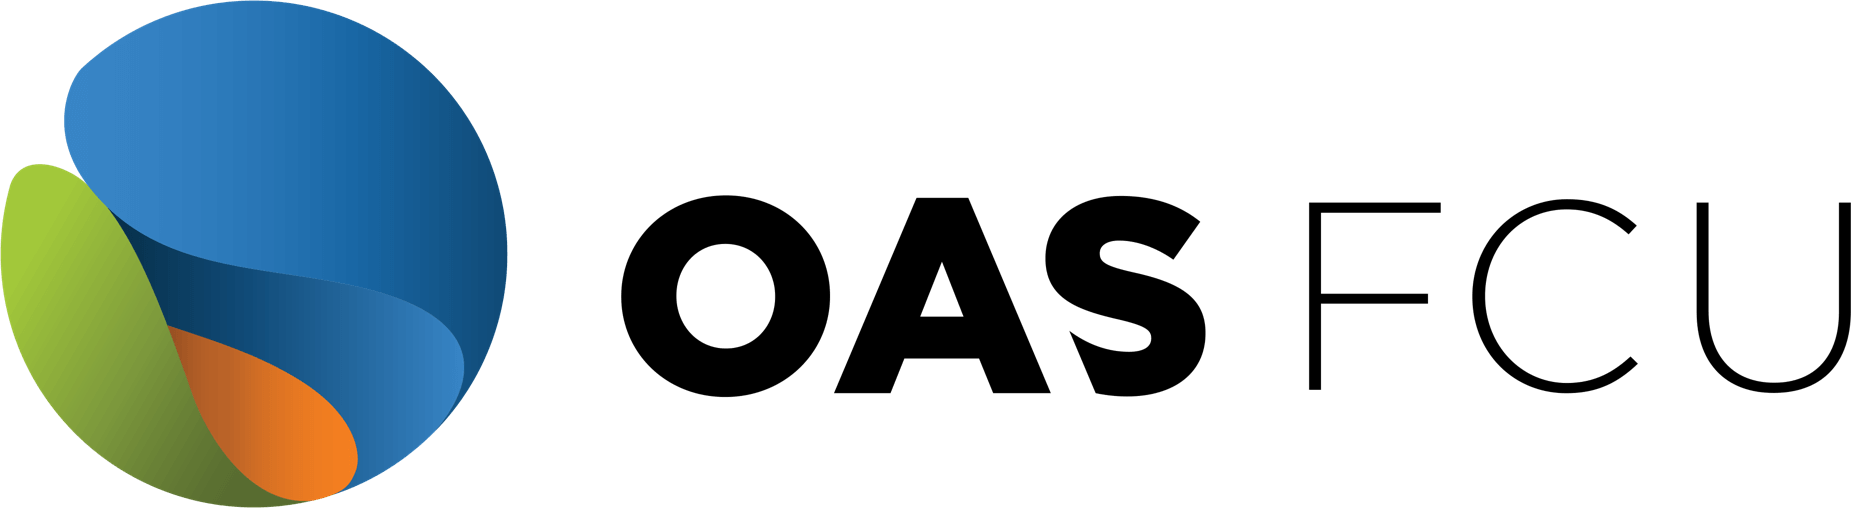 OAS Logo - Home - OAS FCU